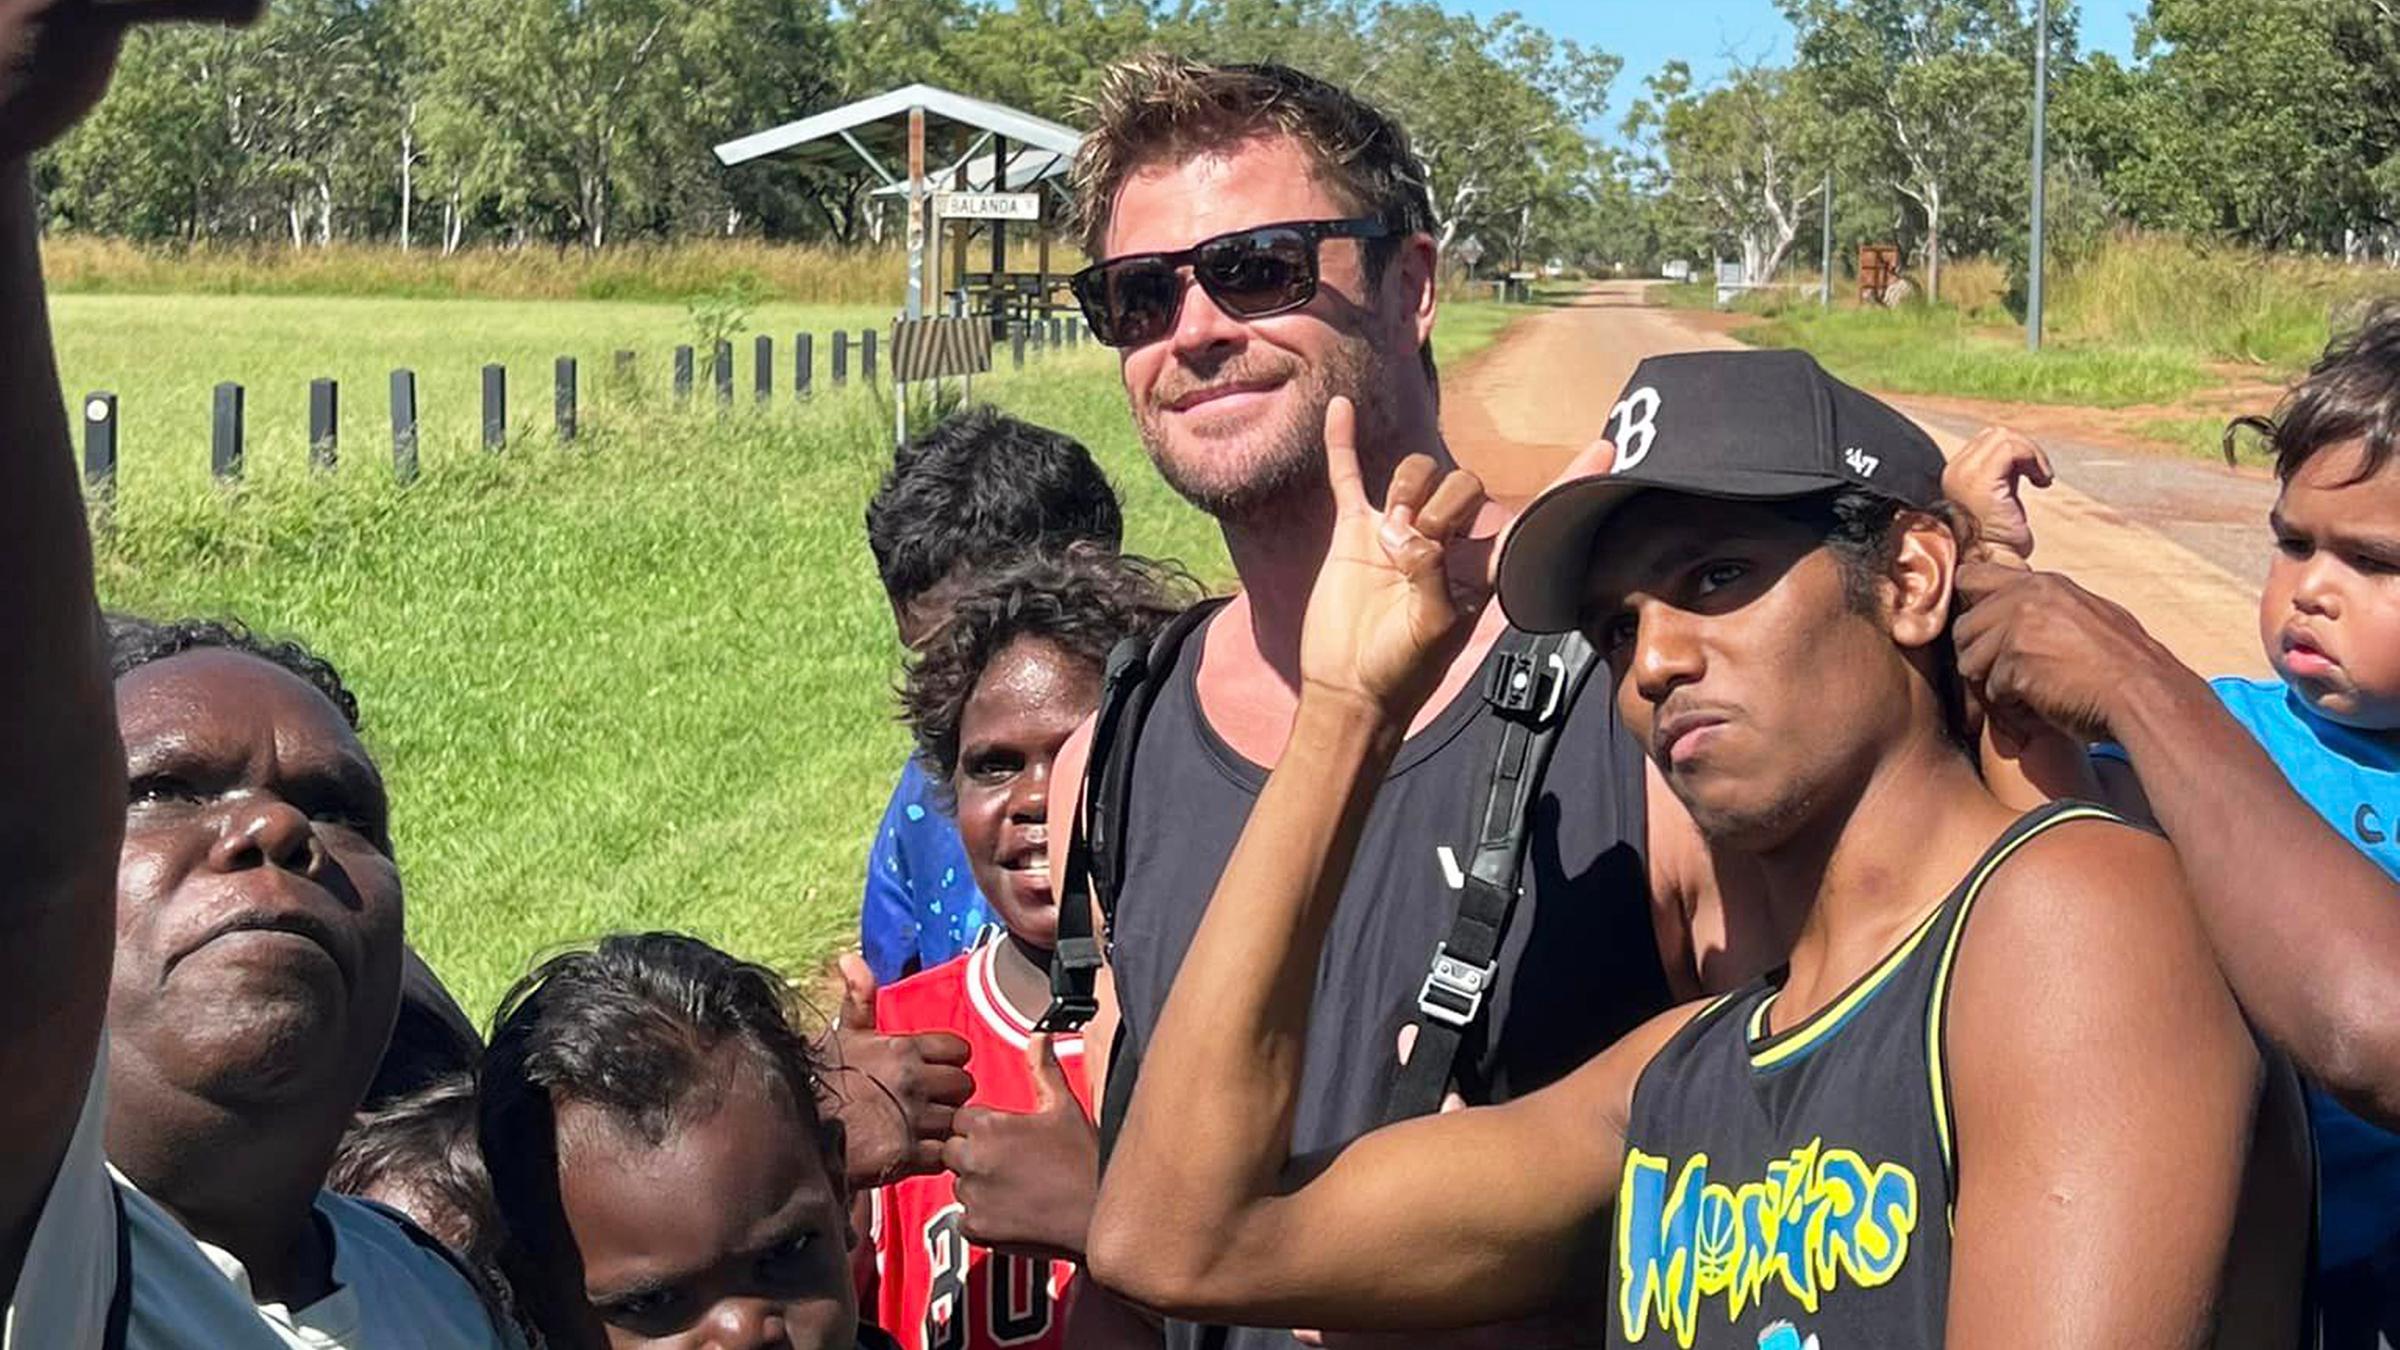 Schauspieler Chris Hemsworth mit australischen Schülern auf einem Selfie.